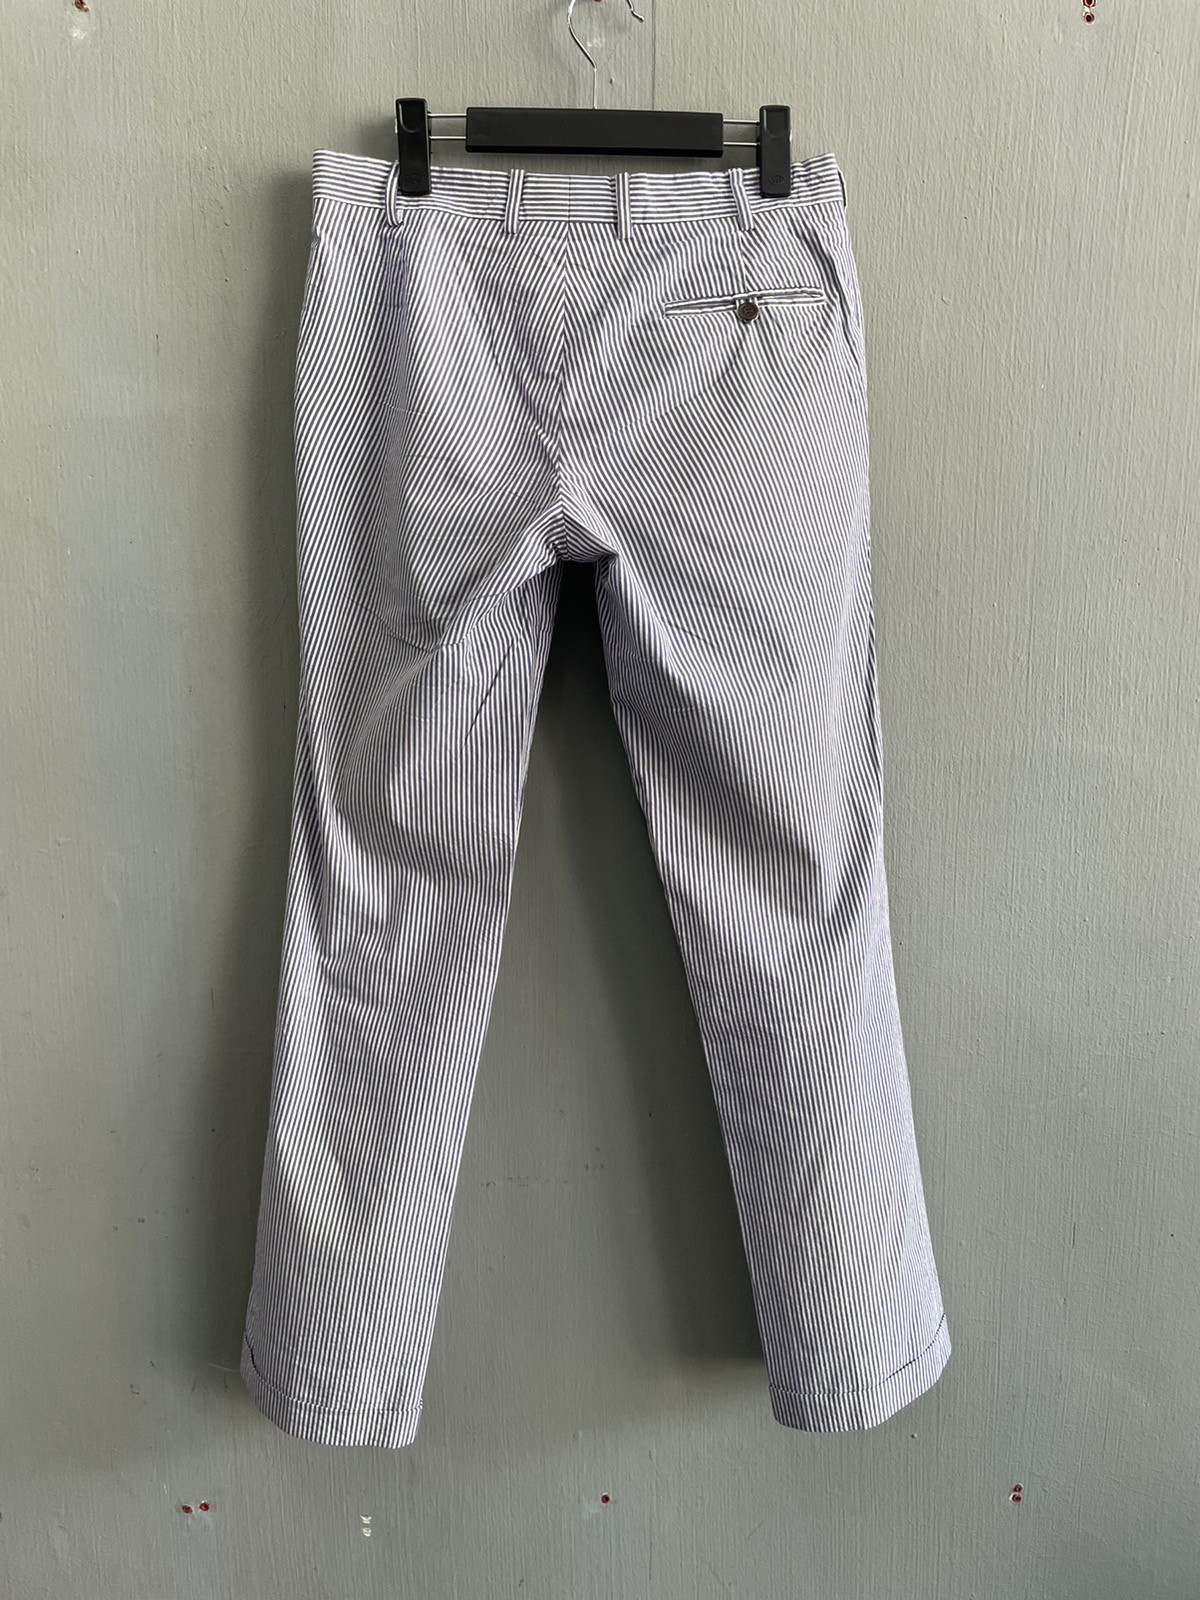 ‼️FINAL PRICE DROP‼️Maison Kitsune Stripe Casual Pants - 6